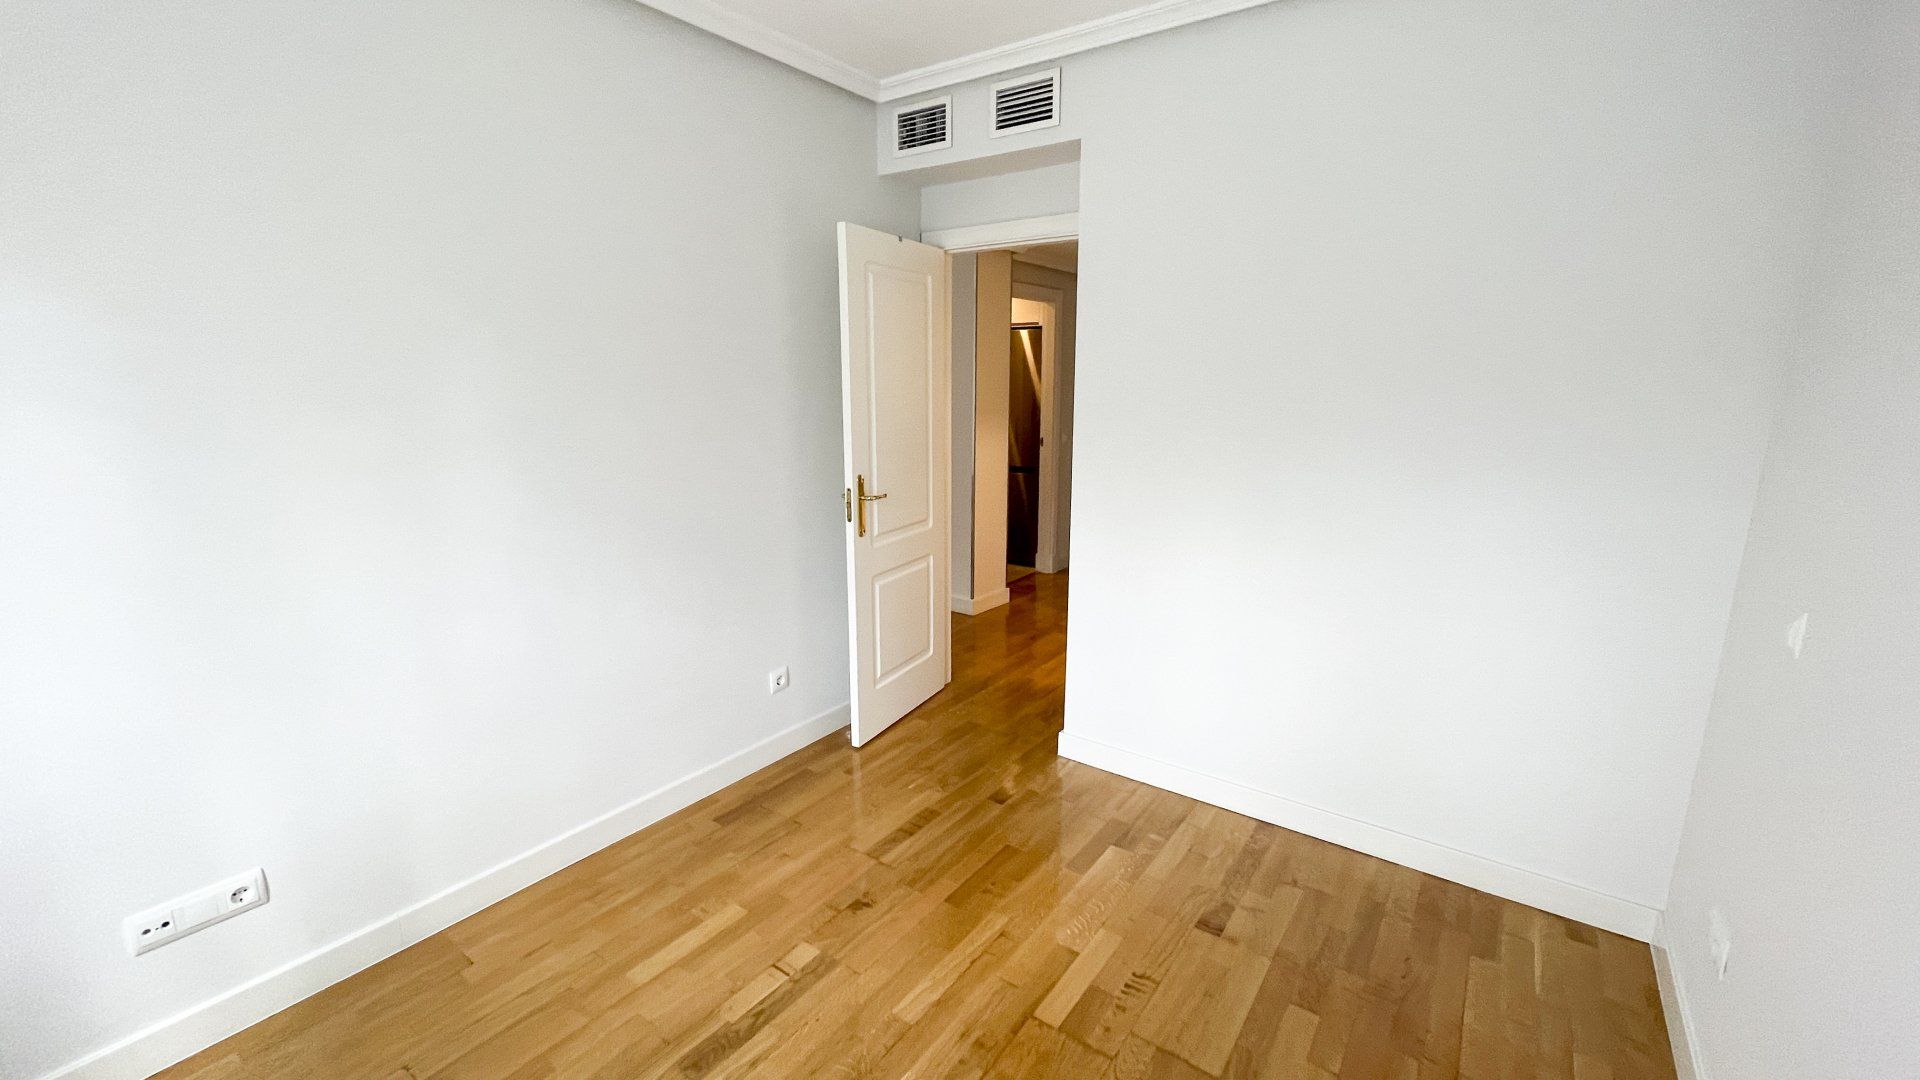 Una habitación vacía con suelos de madera y paredes blancas.